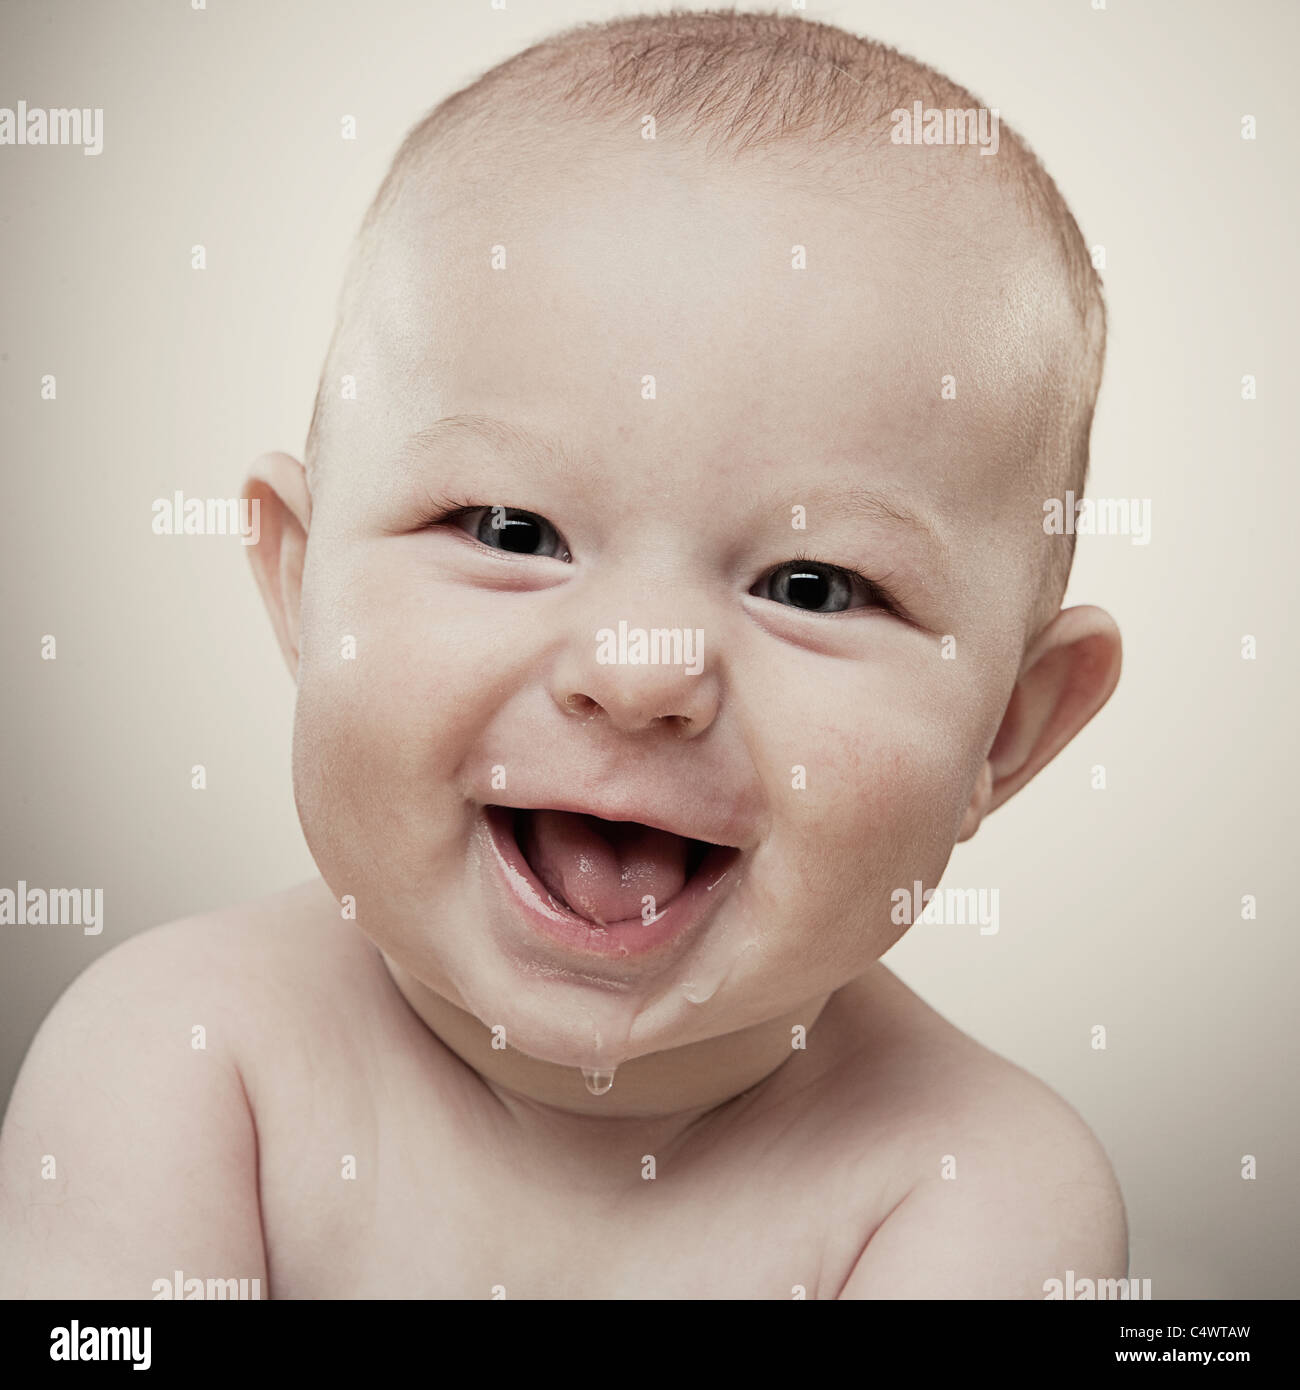 États-unis, Texas, Dallas, Studio portrait of Baby Boy (6-11 months) smiling Banque D'Images